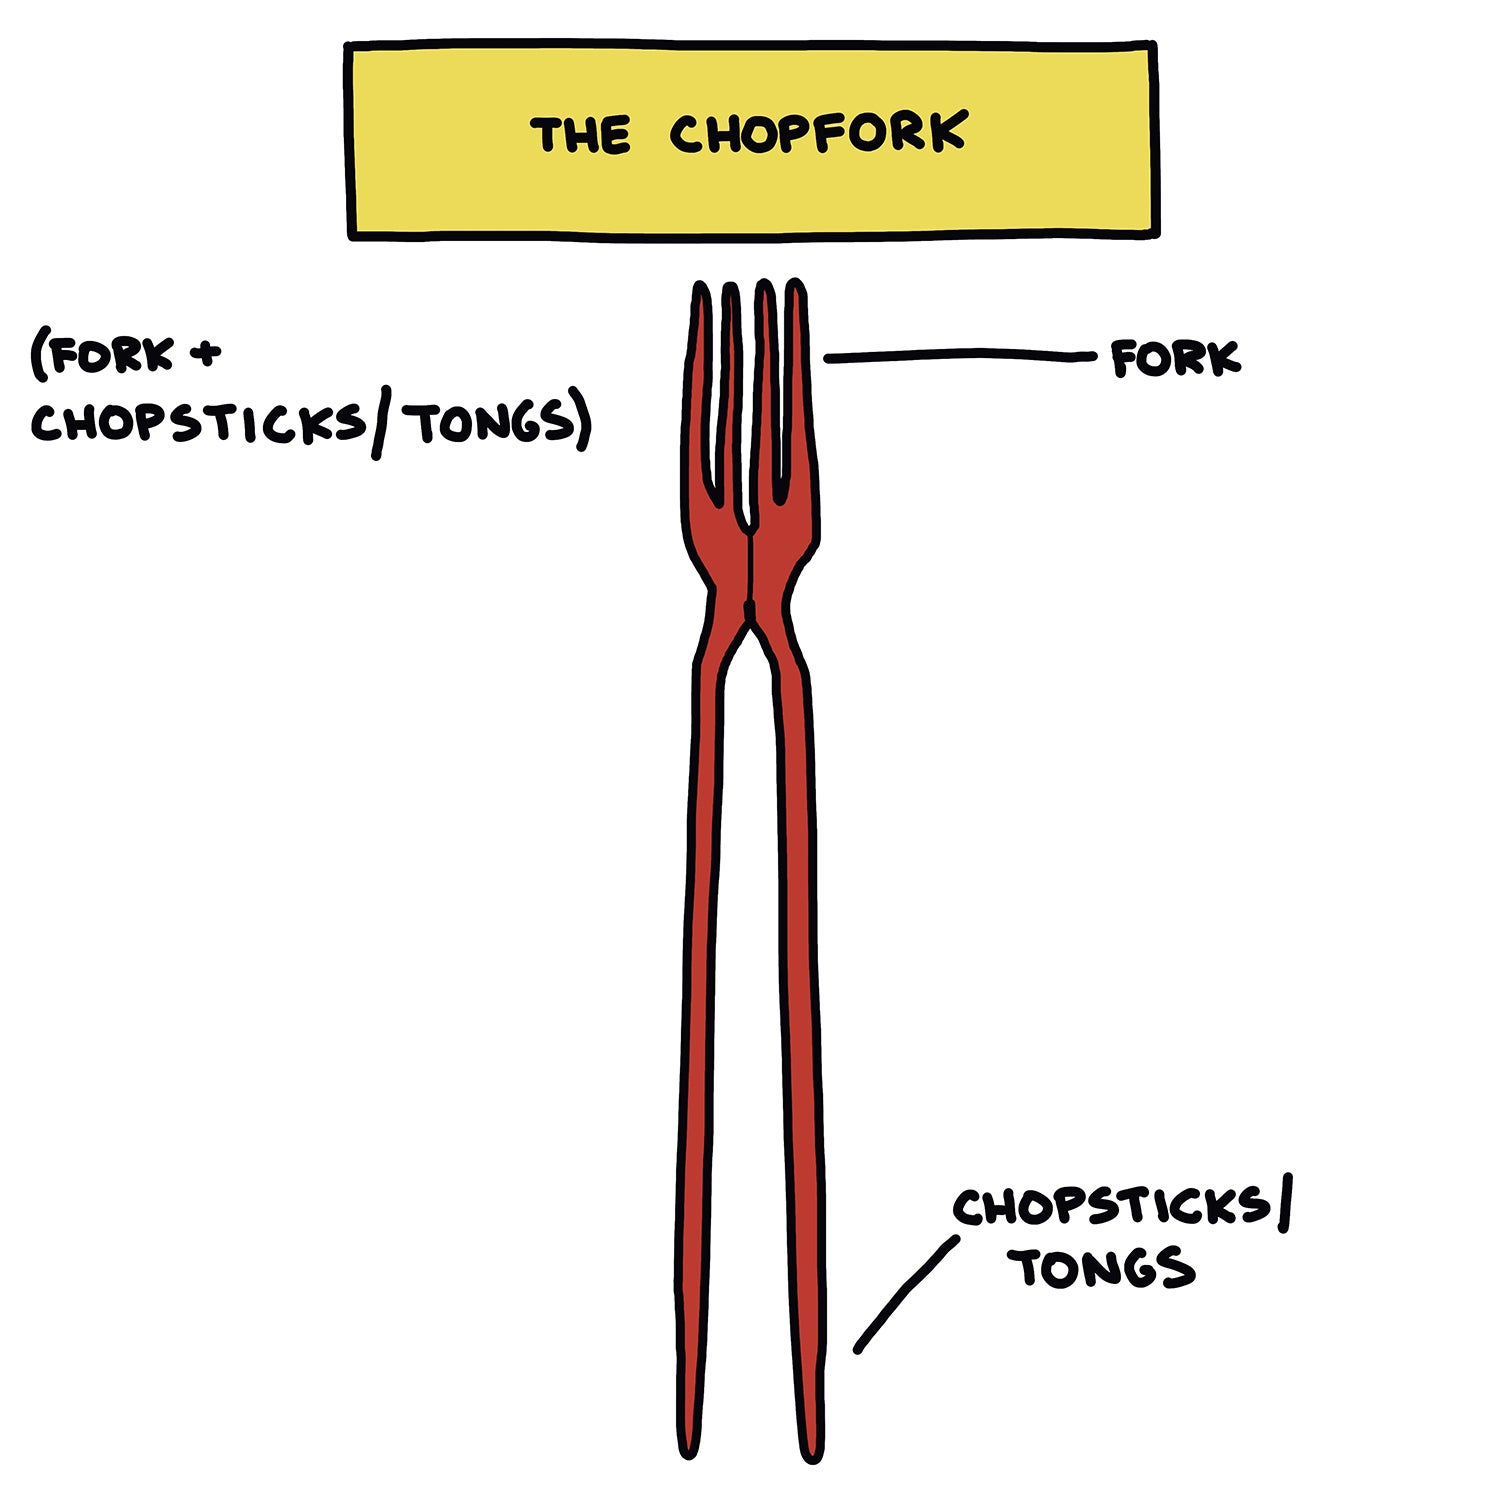 The Chopfork